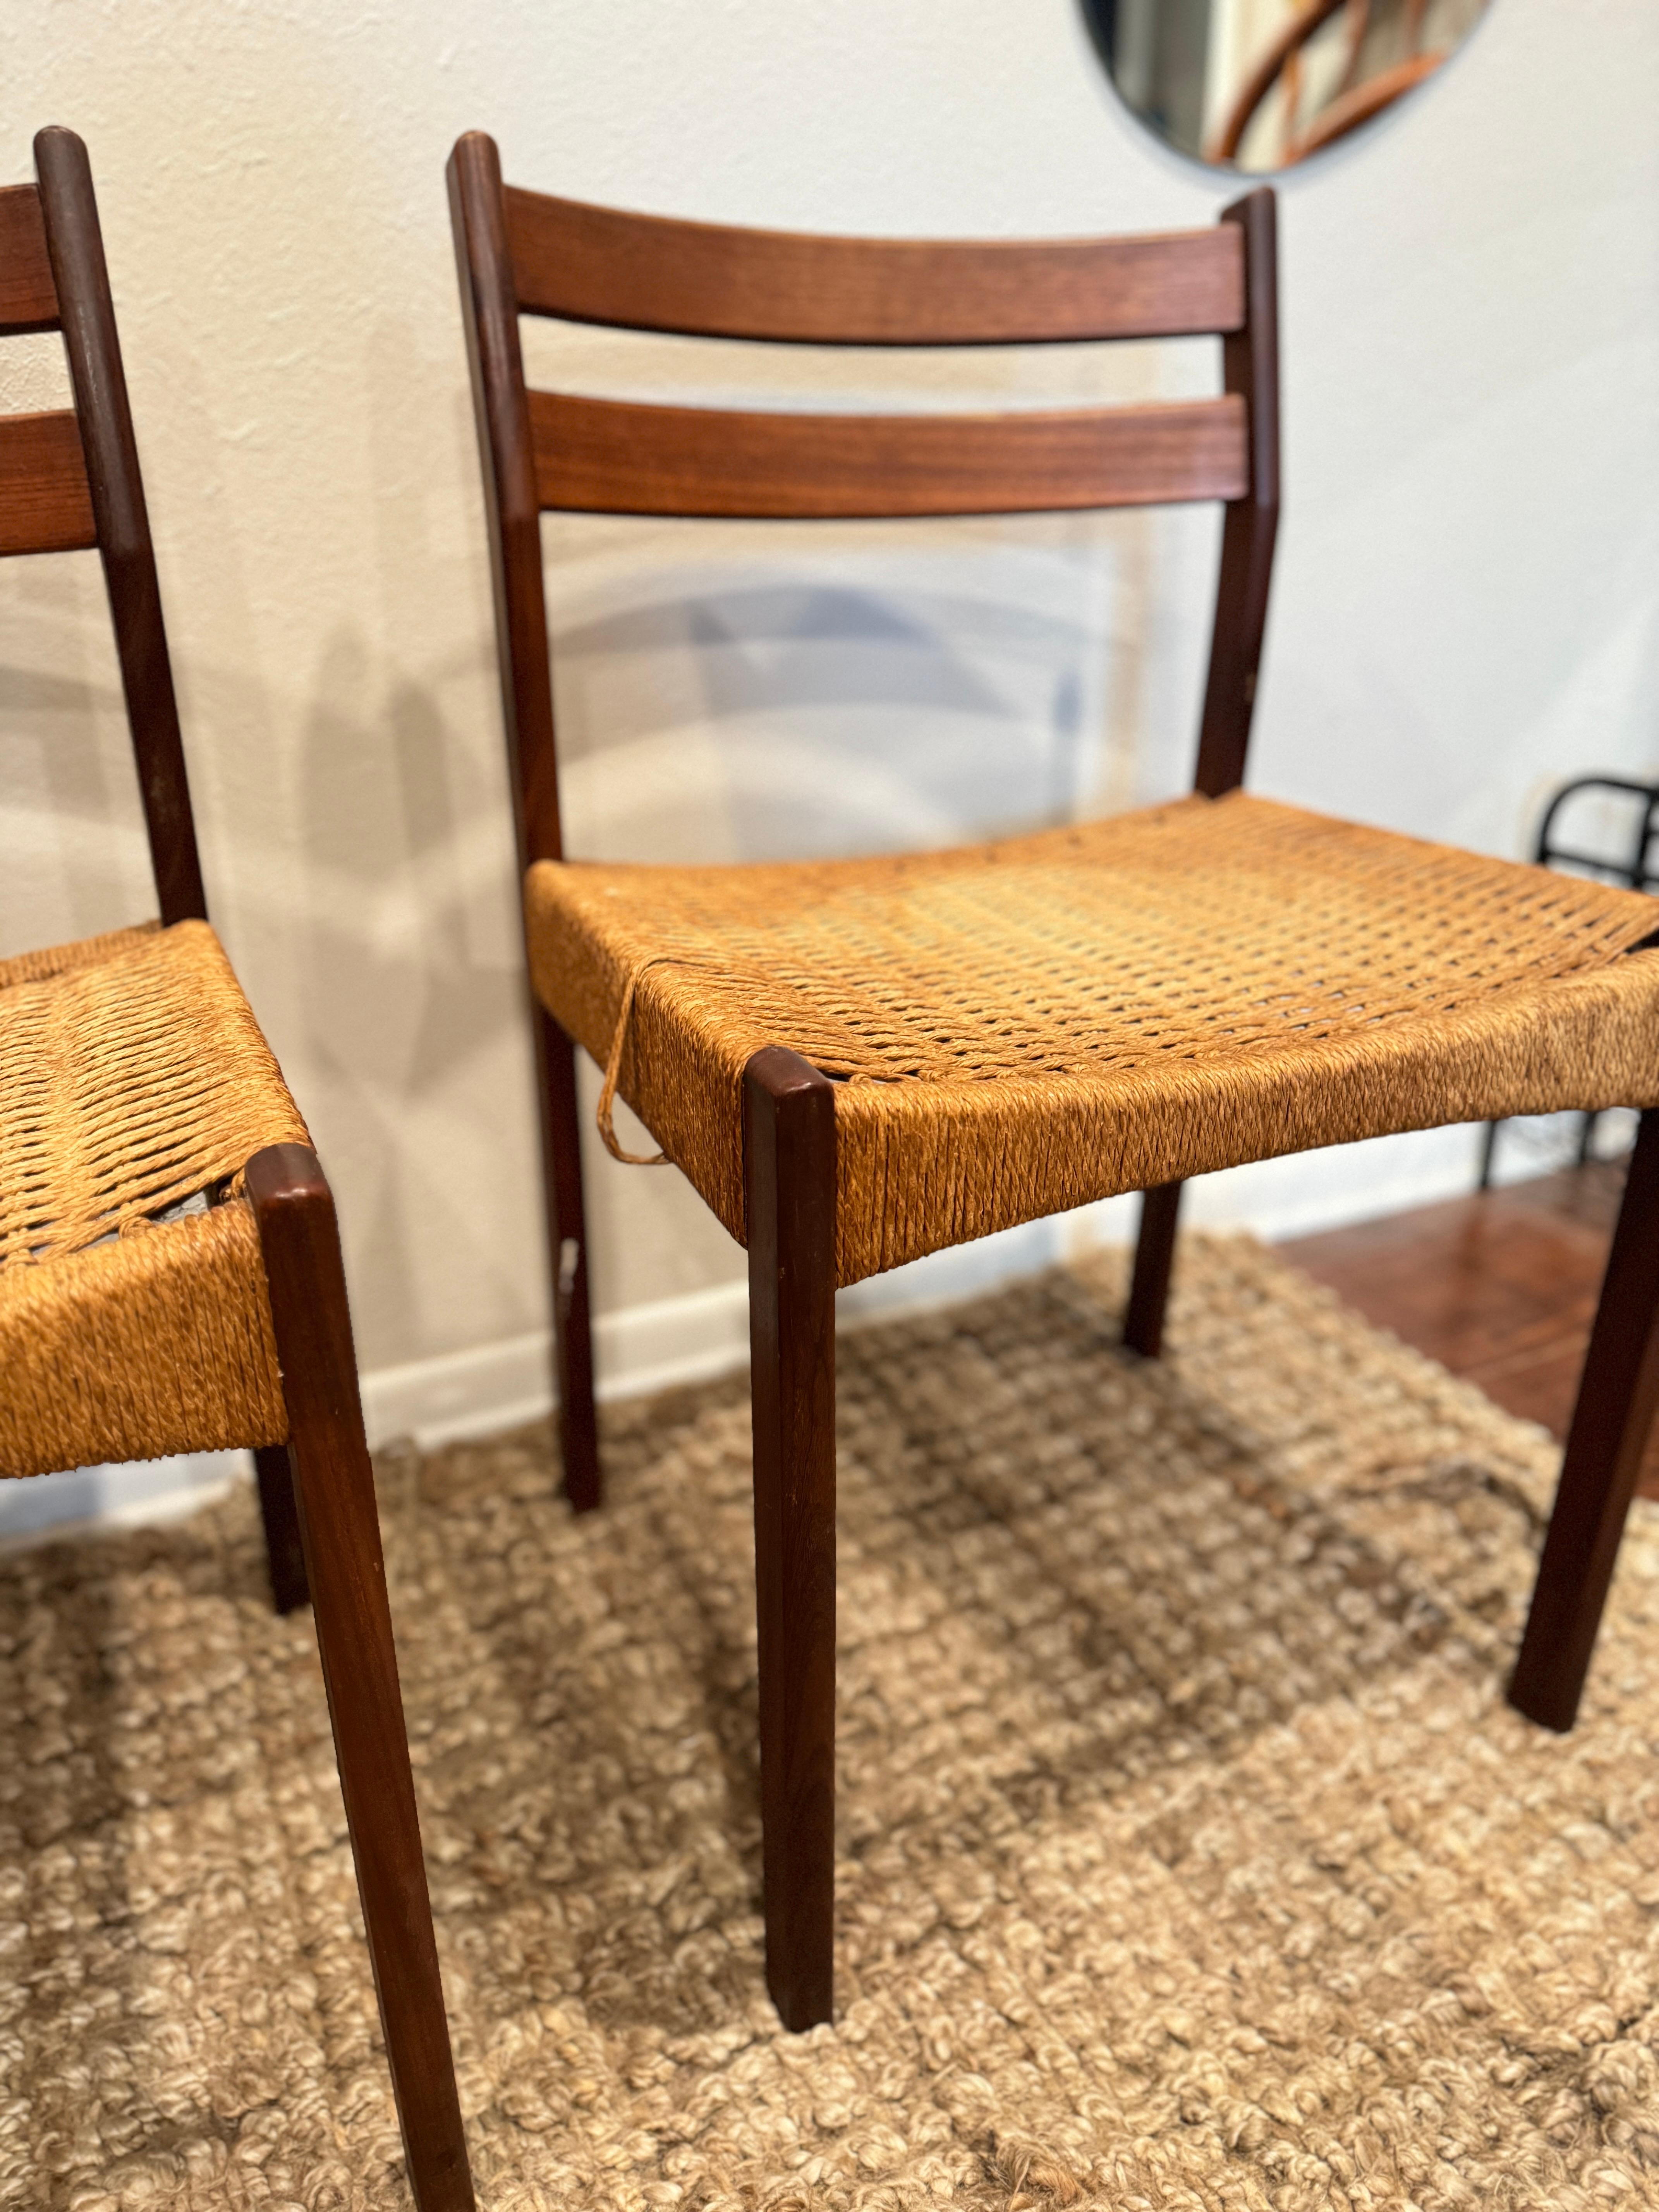 un ensemble de 4 chaises de salle à manger conçues par Arne Hovmand/Olsen, produites par Mogens Kold, vers les années 1950. Les chaises sont en teck avec des sièges originaux en corde de papier. Leur structure est saine, mais les sièges présentent